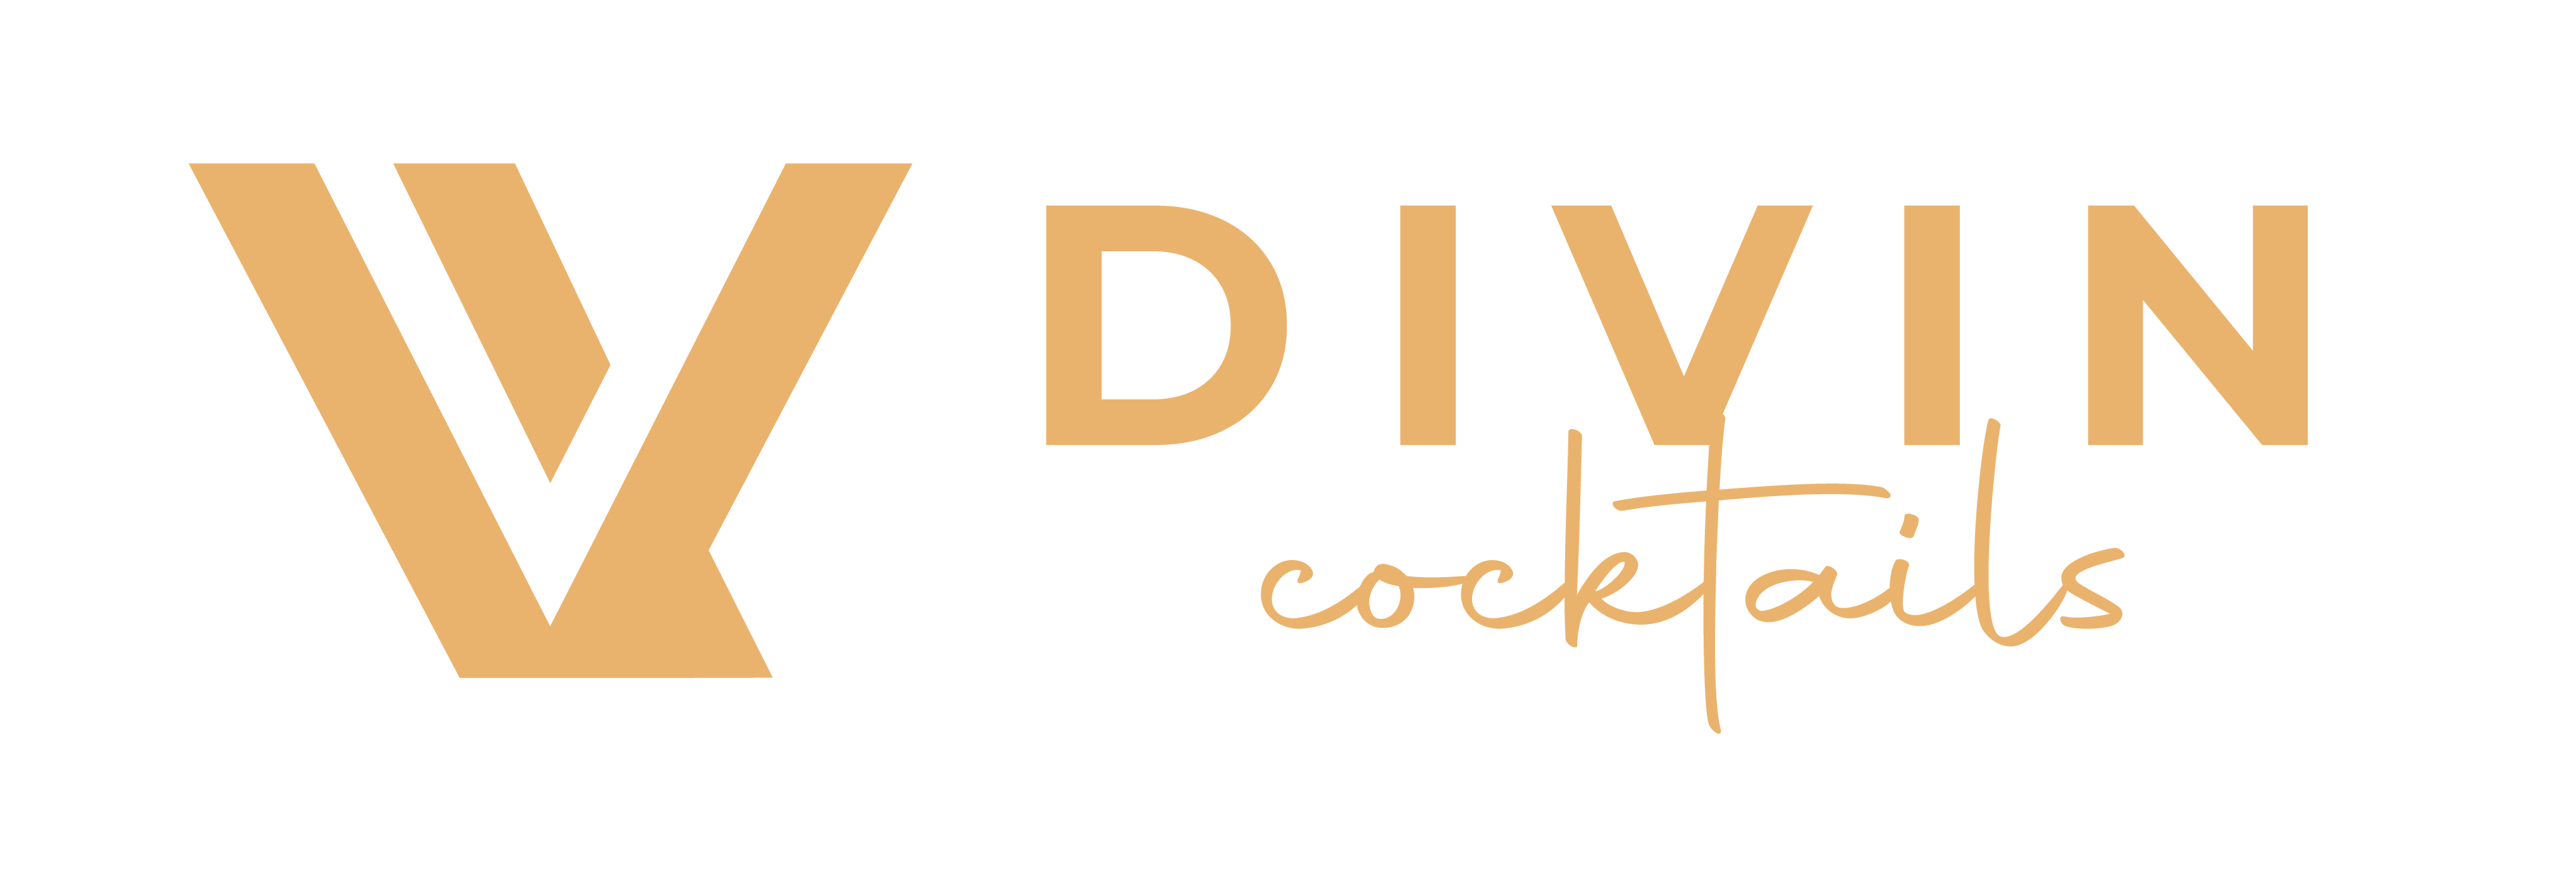 Divin Cocktails